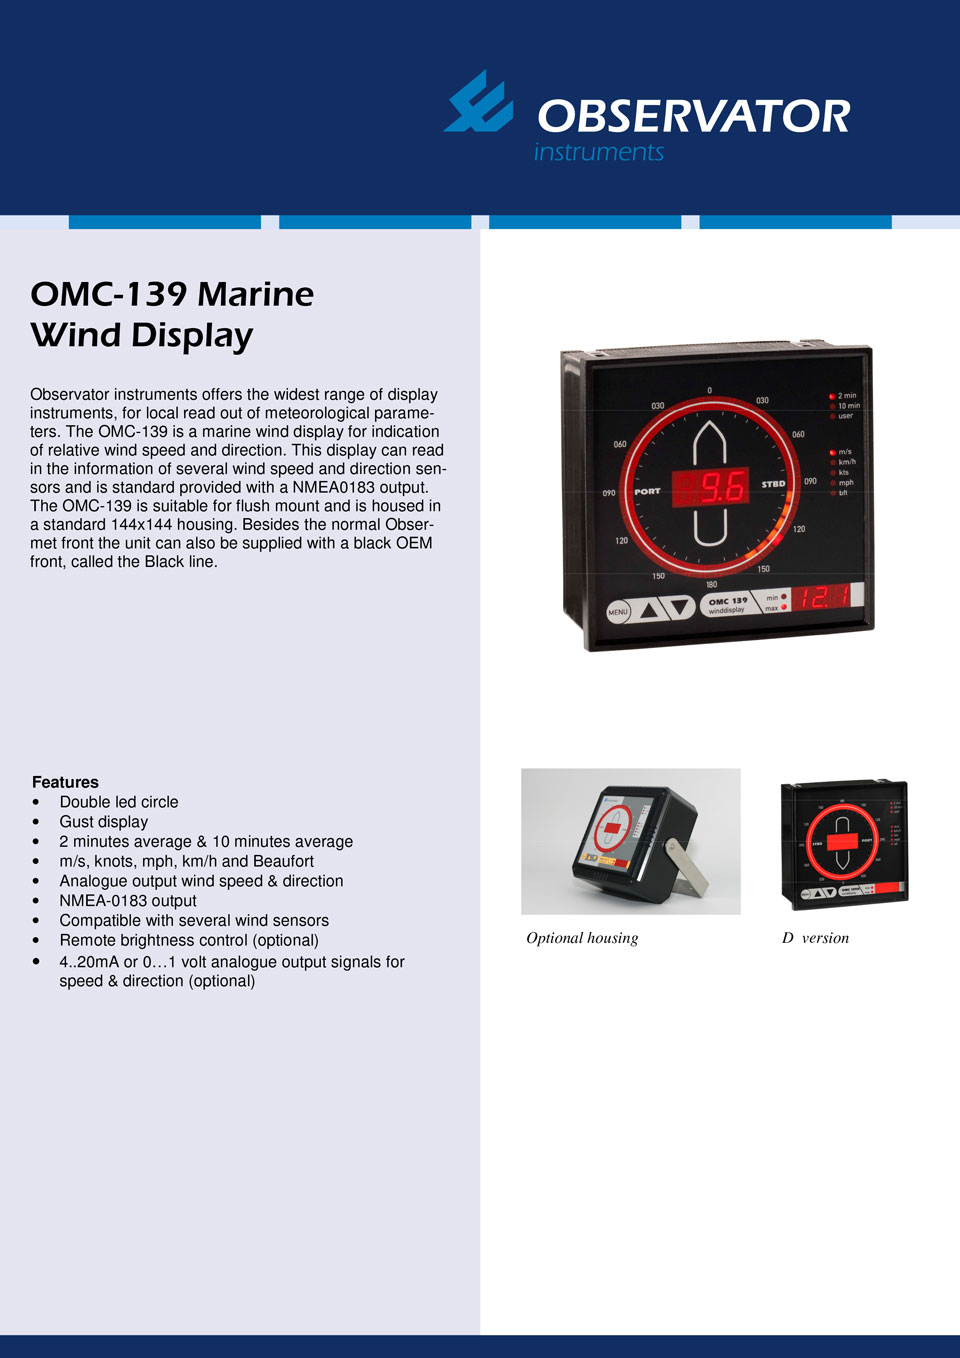 OMC-139 Marine Wind Display